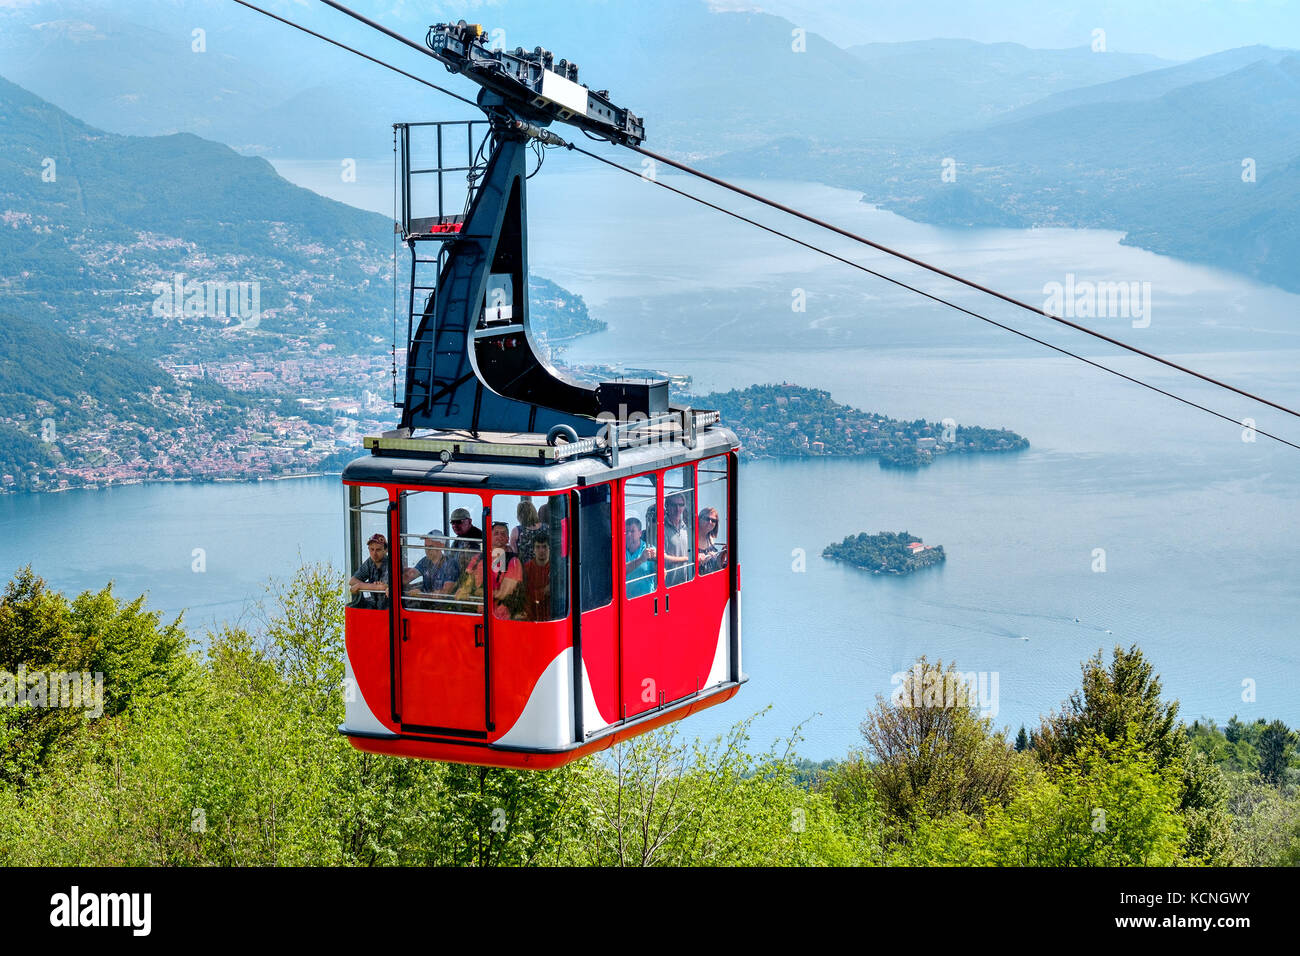 Lago Maggiore (Lac Majeur) cabine téléphérique descente du Mont Mottarone haut (Stresa, Italie, le 22 mai 2017) Banque D'Images